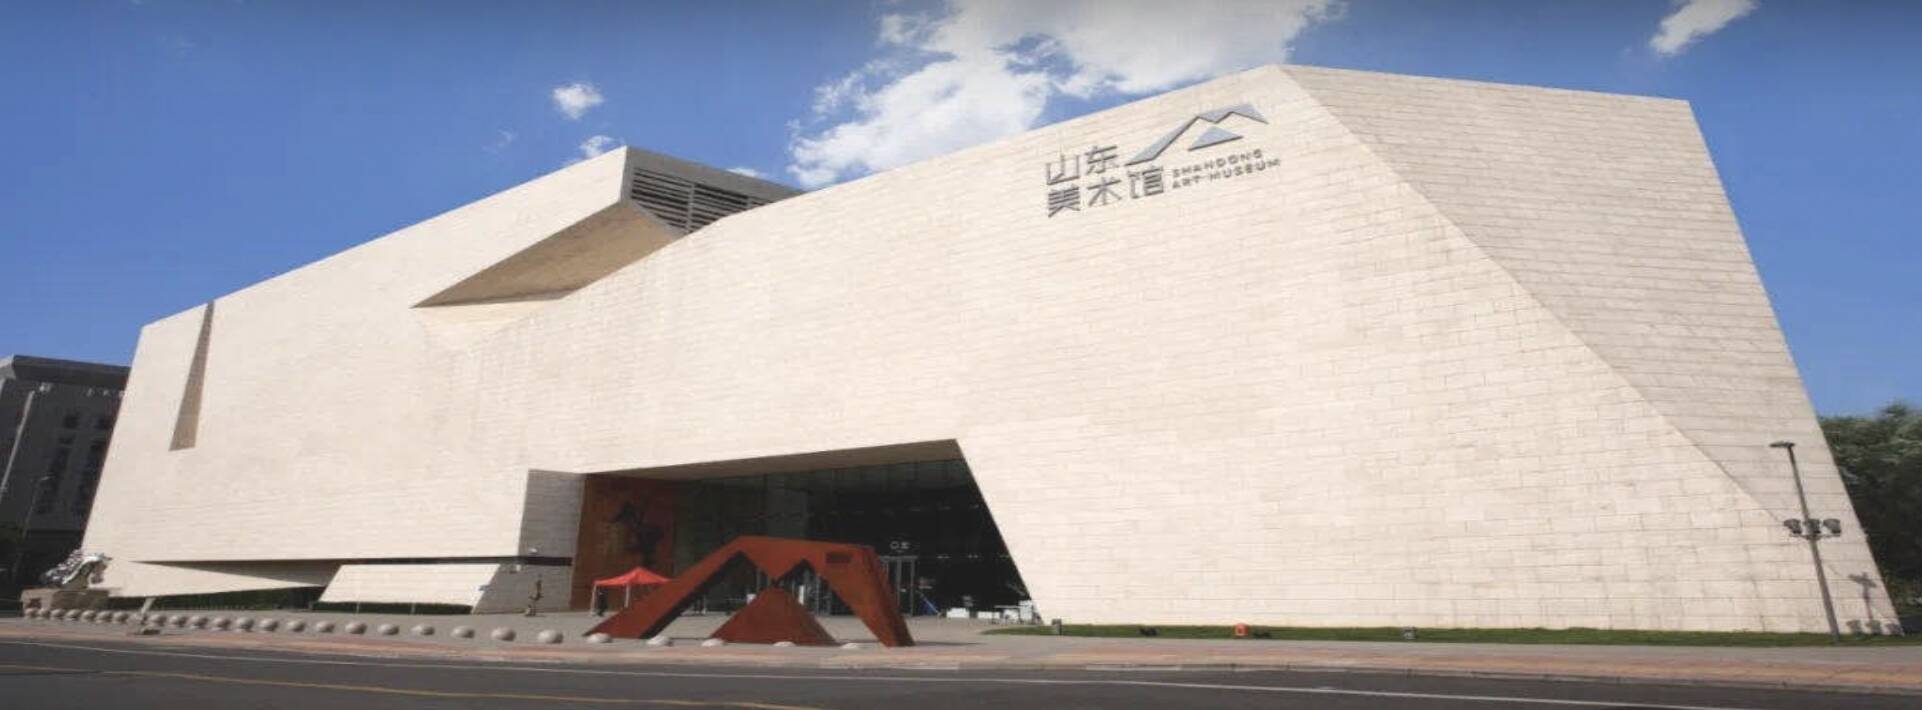 山东美术馆暂停接待团体参观 游客凭“7天内核酸检测阴性报告”入馆